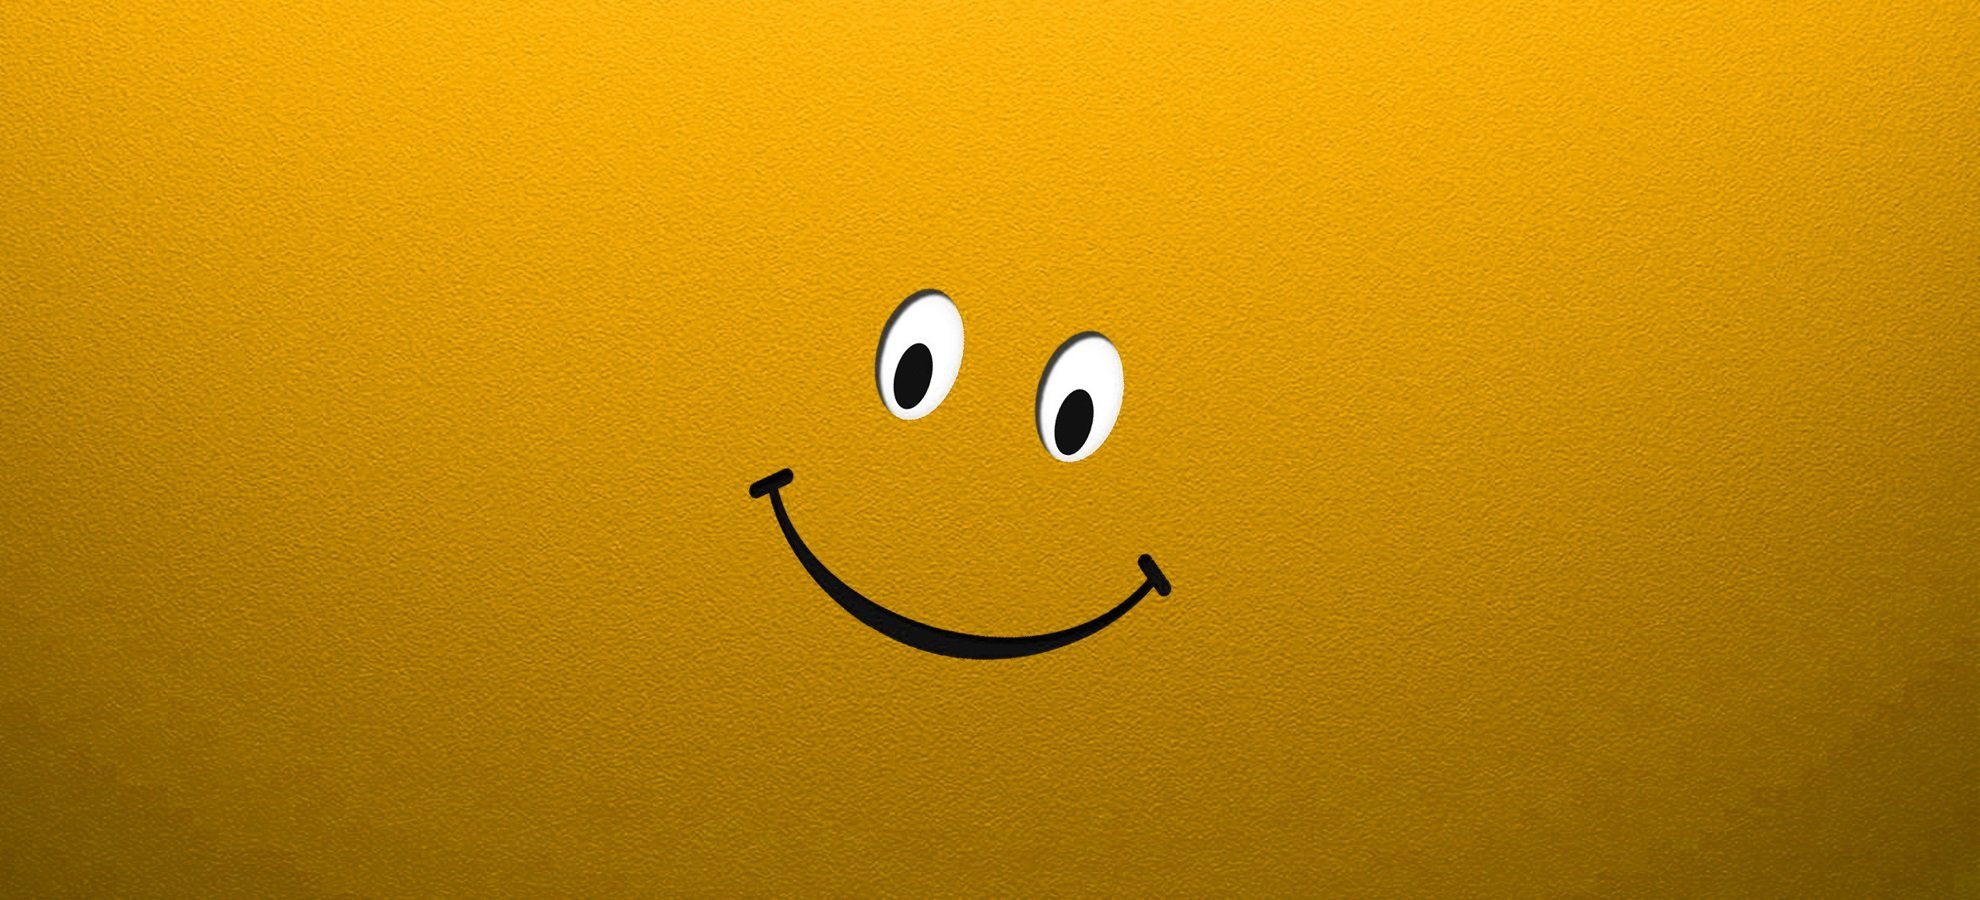 Фон смайлики улыбки. Обои на рабочий стол смайлики. Позитивный фон. Улыбка на желтом фоне. Обои со смайликами.